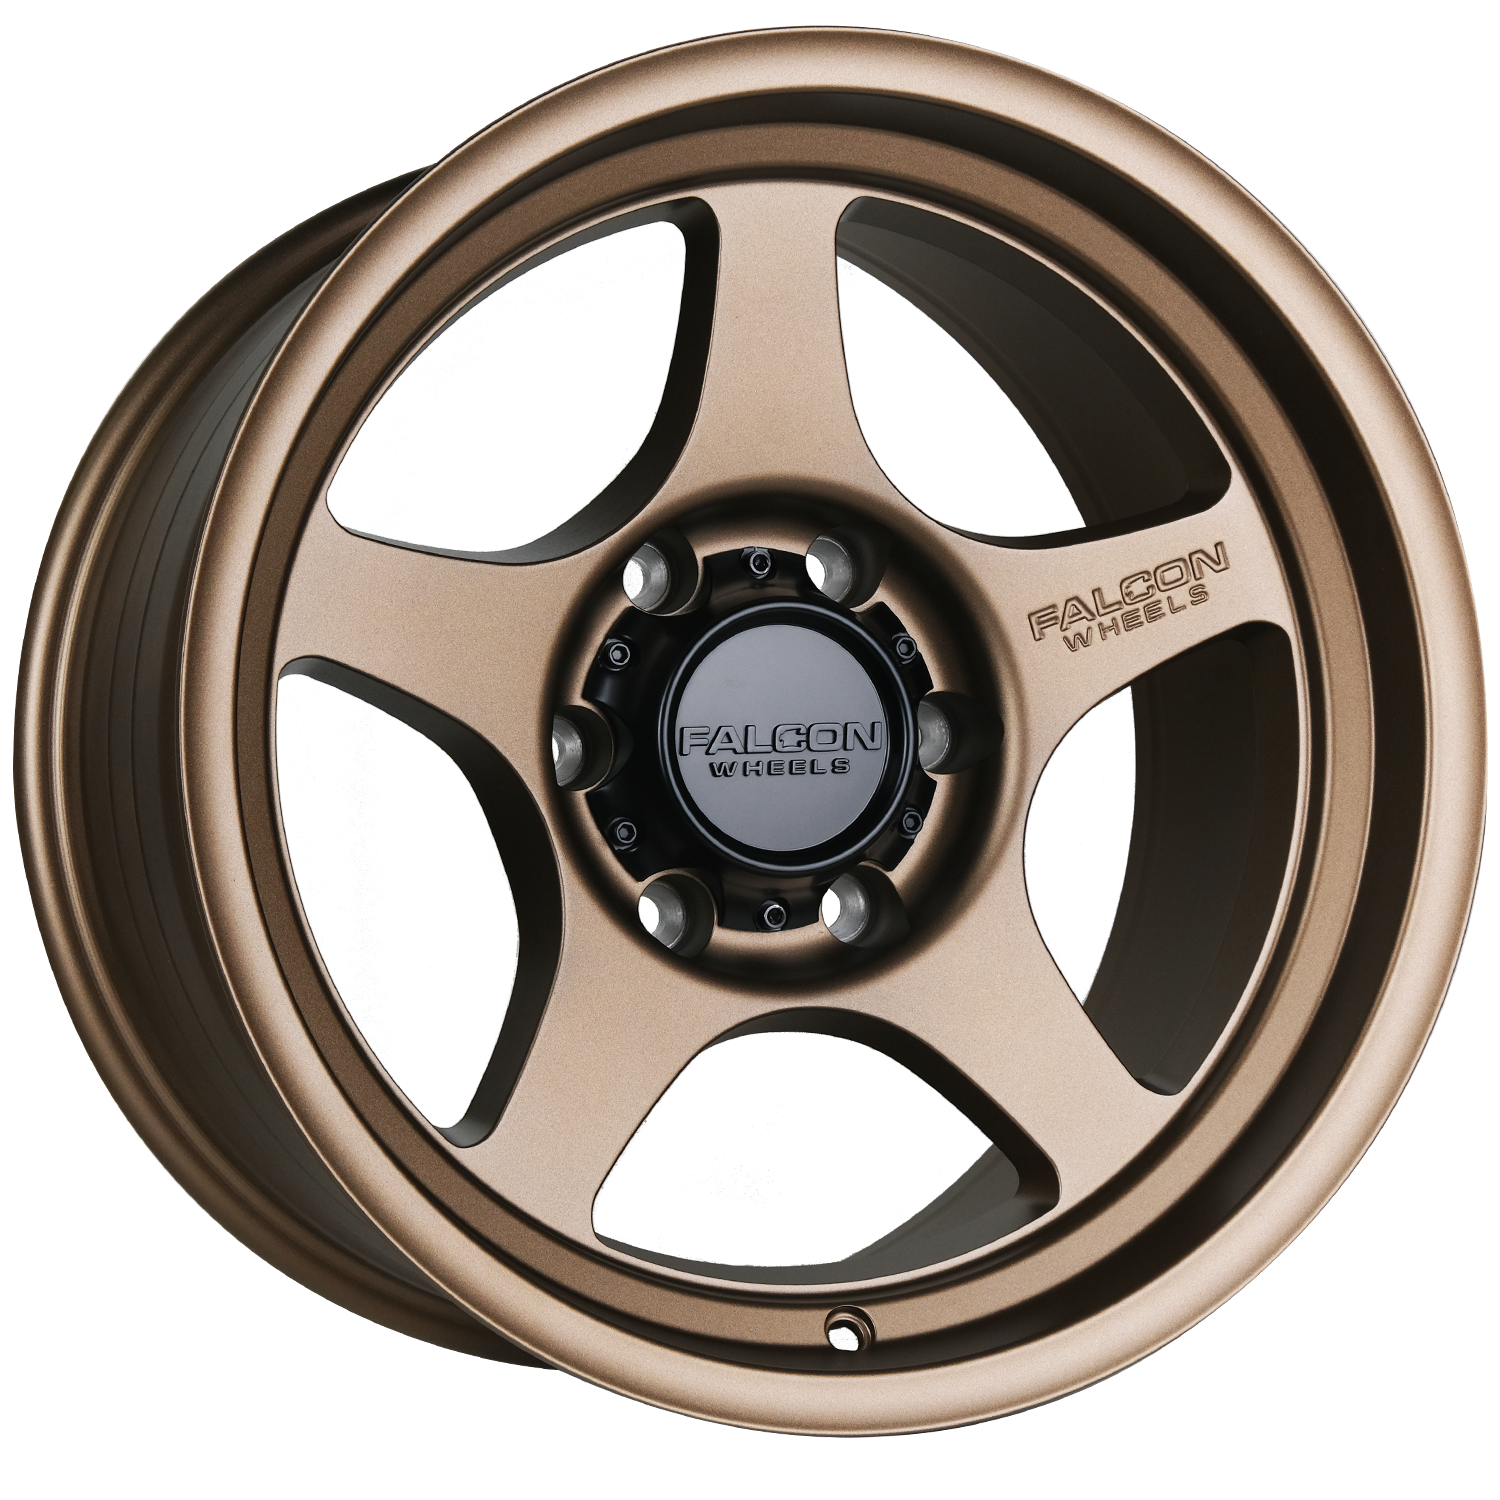 T2 - Matte Bronze 17x9 - Premium Wheels from Falcon Off-Road Wheels - Just $270! Shop now at Falcon Off-Road Wheels 